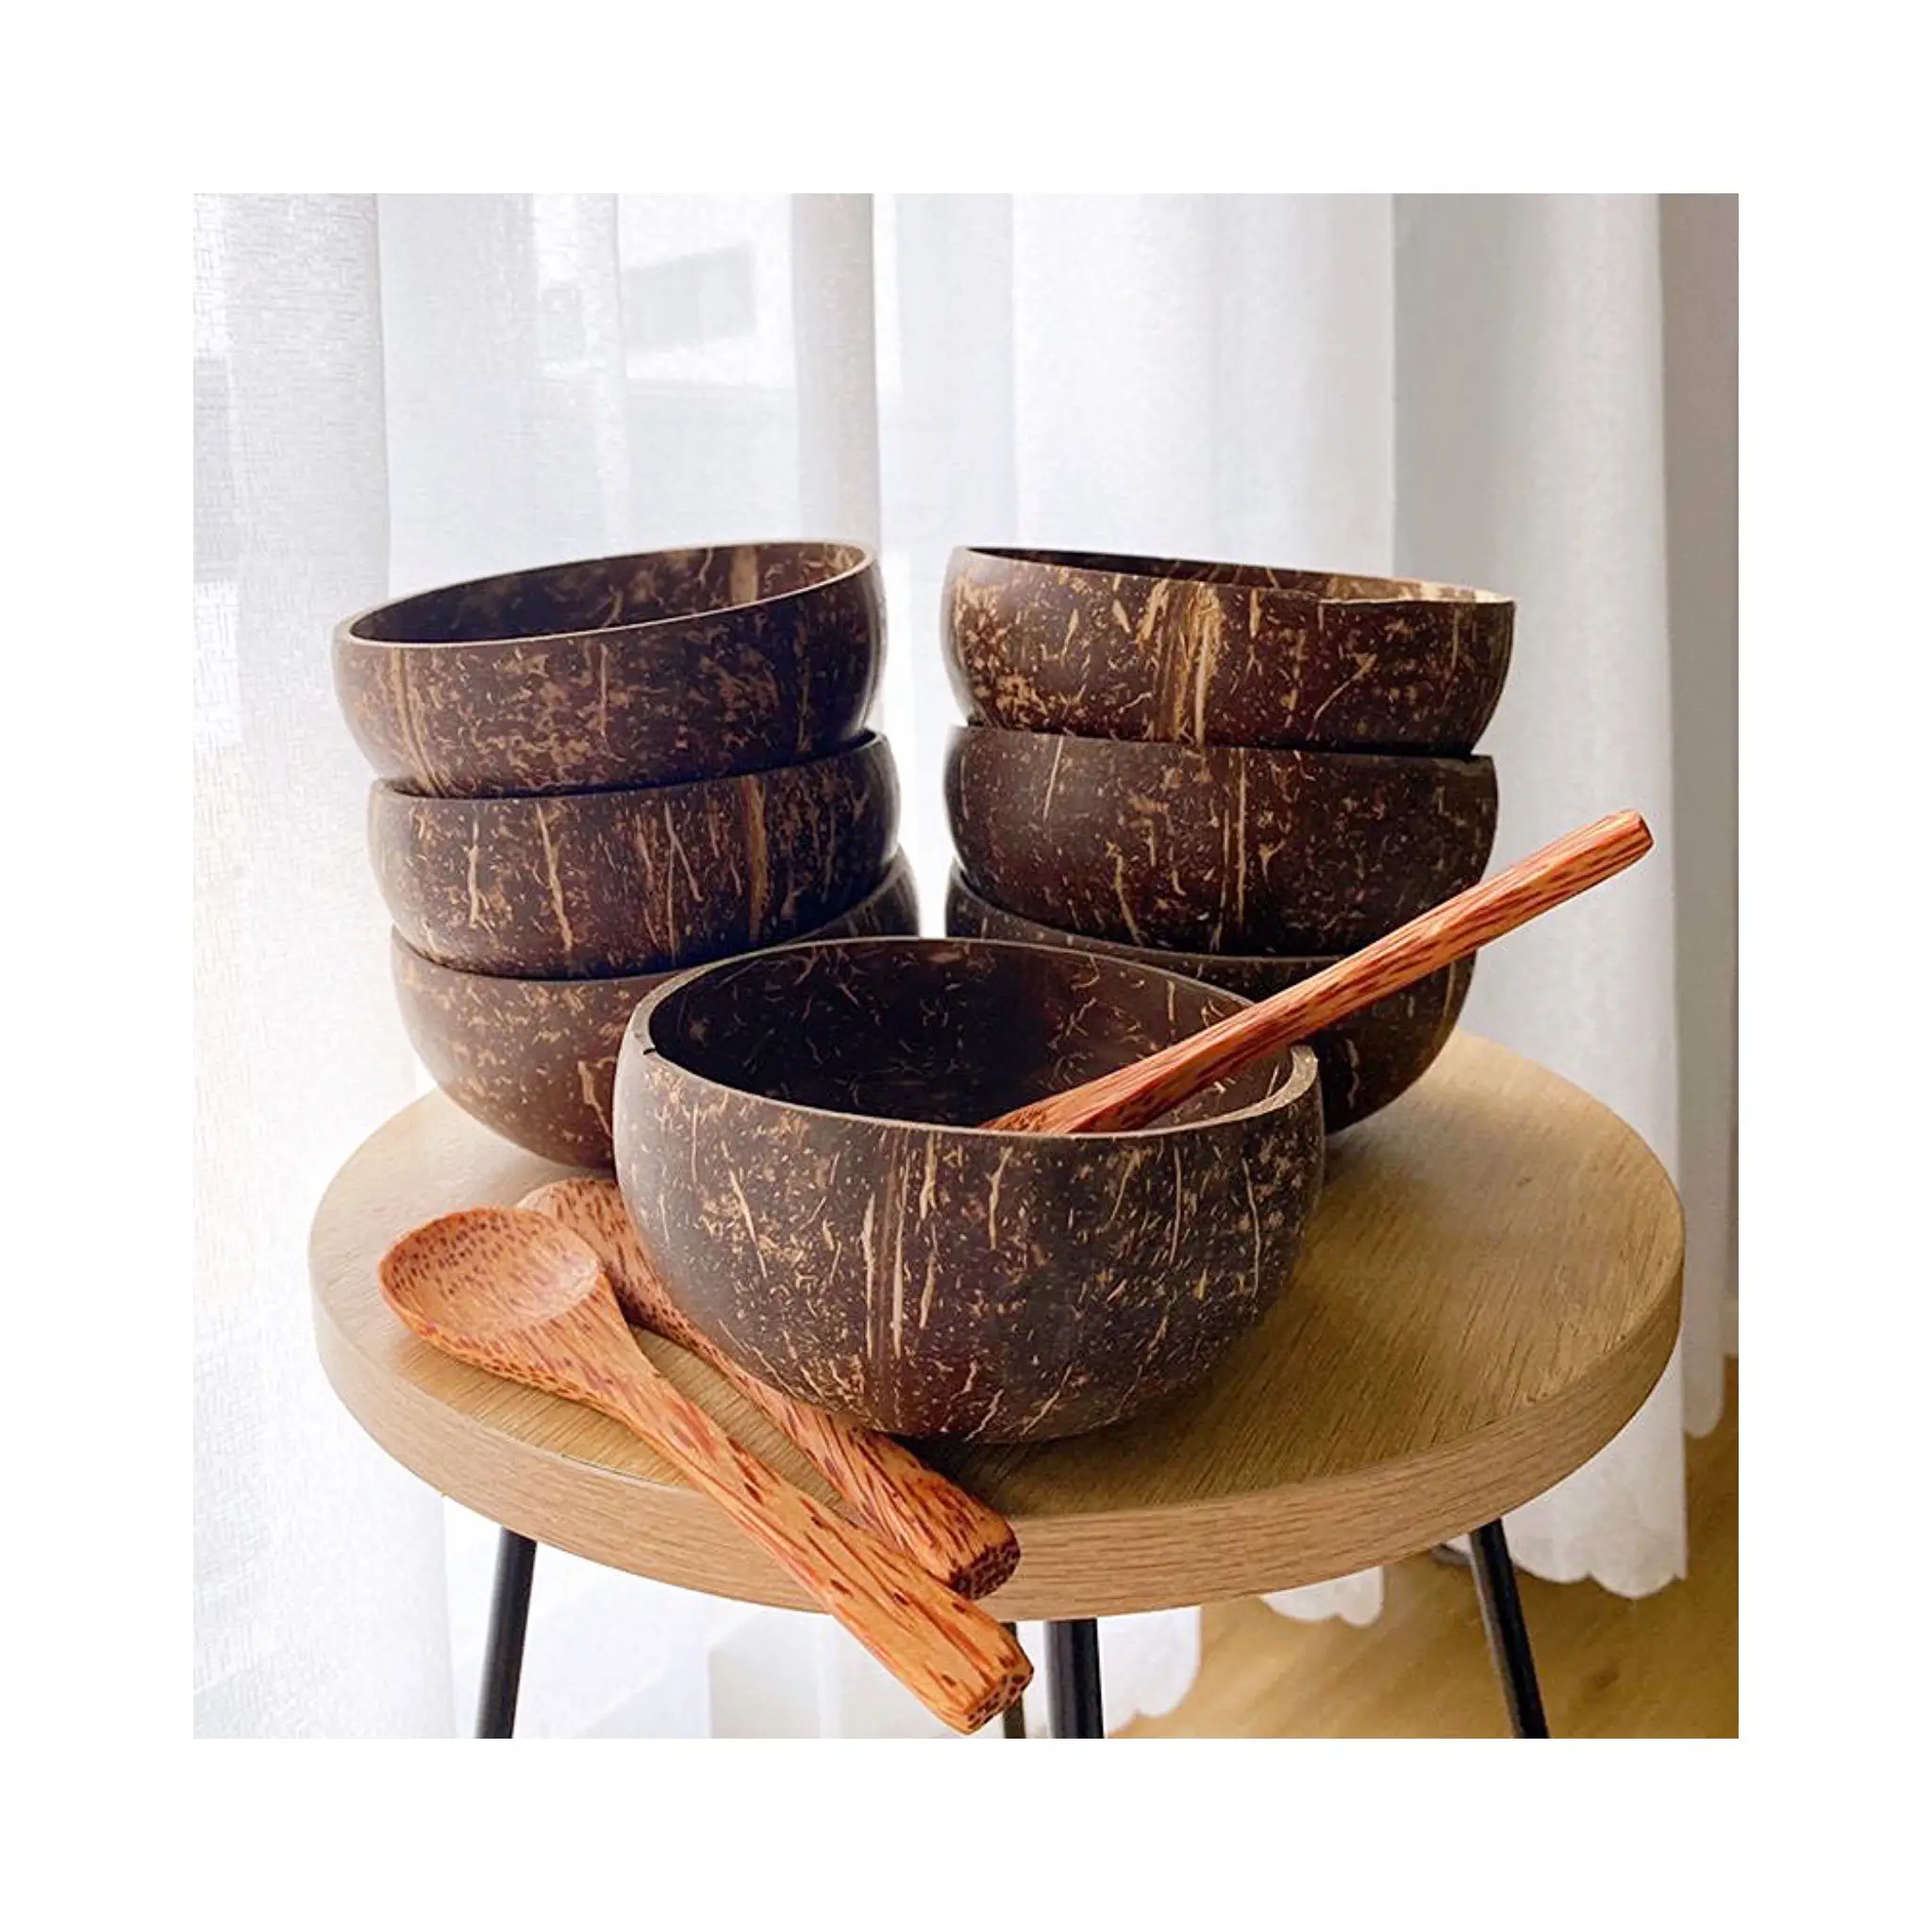 Keramik-Kokosnuss-Schale kreative handgemachte Schale mit individuellem Design akzeptabel / Vietnamische lackierte bunte Kokosnuss-Schale